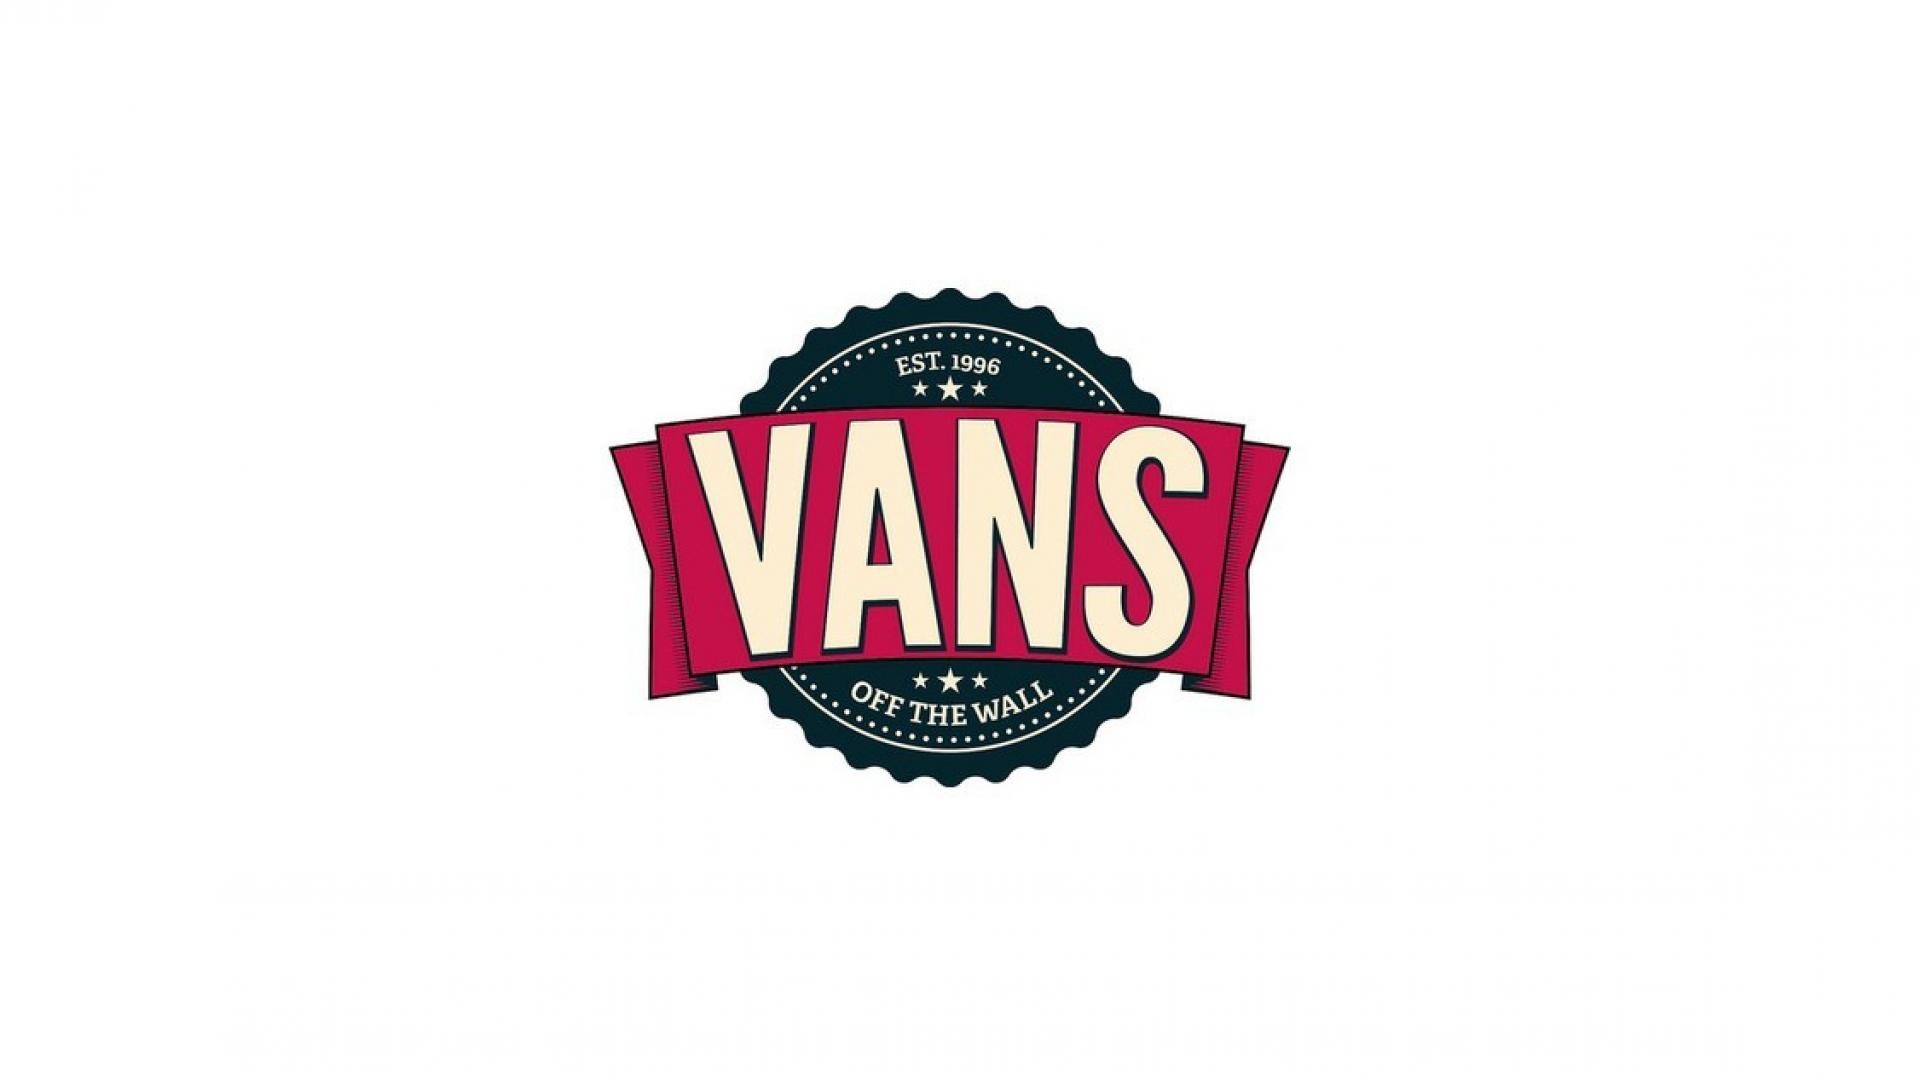 Vans: The company founded in 1966, Paul Van Doren, James and Gordon C. Lee. 1920x1080 Full HD Wallpaper.